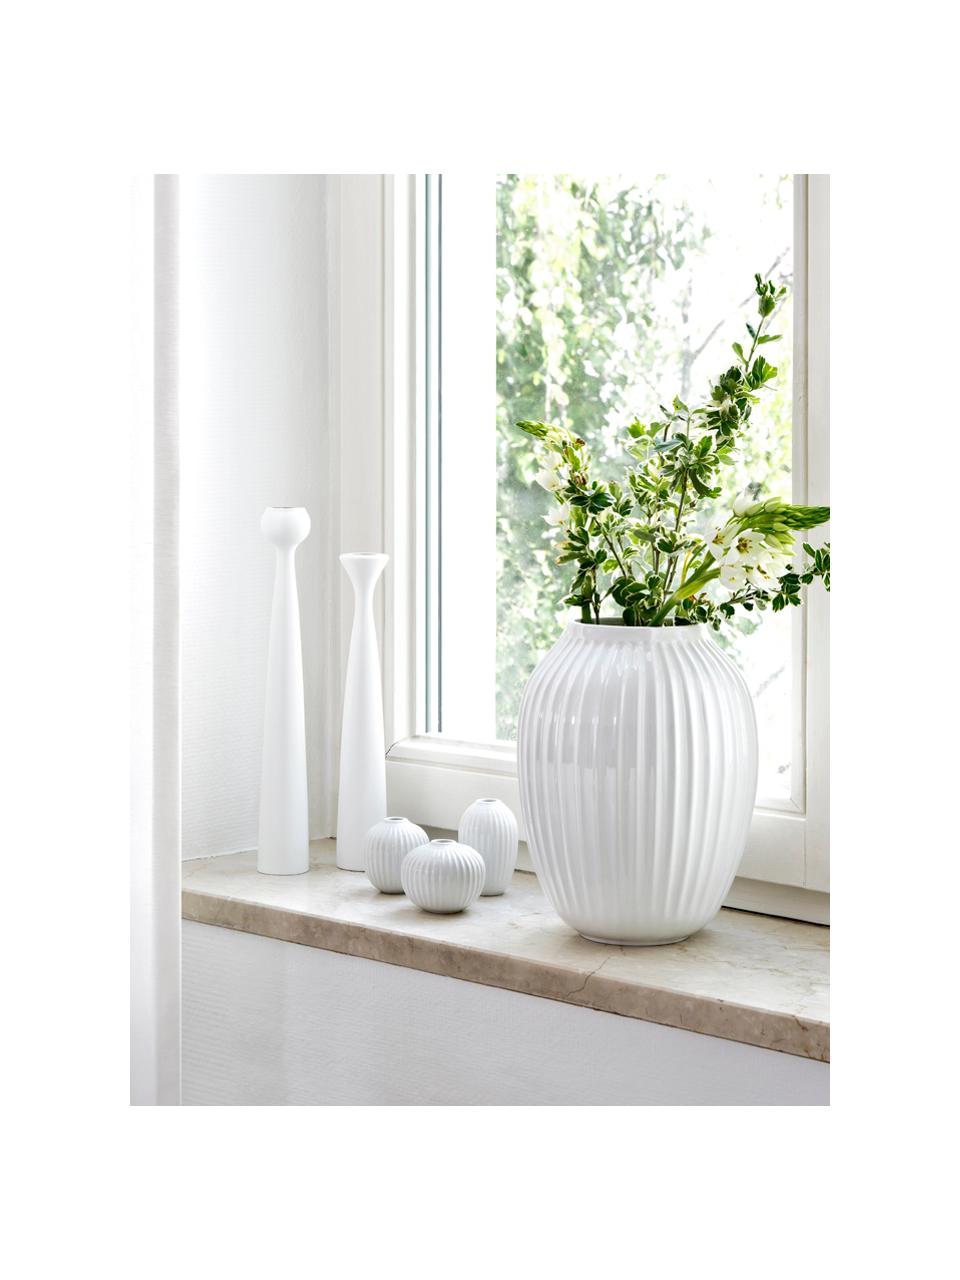 Handgefertigte Design-Vase Hammershøi, Porzellan, Weiß, Ø 20 x H 25 cm